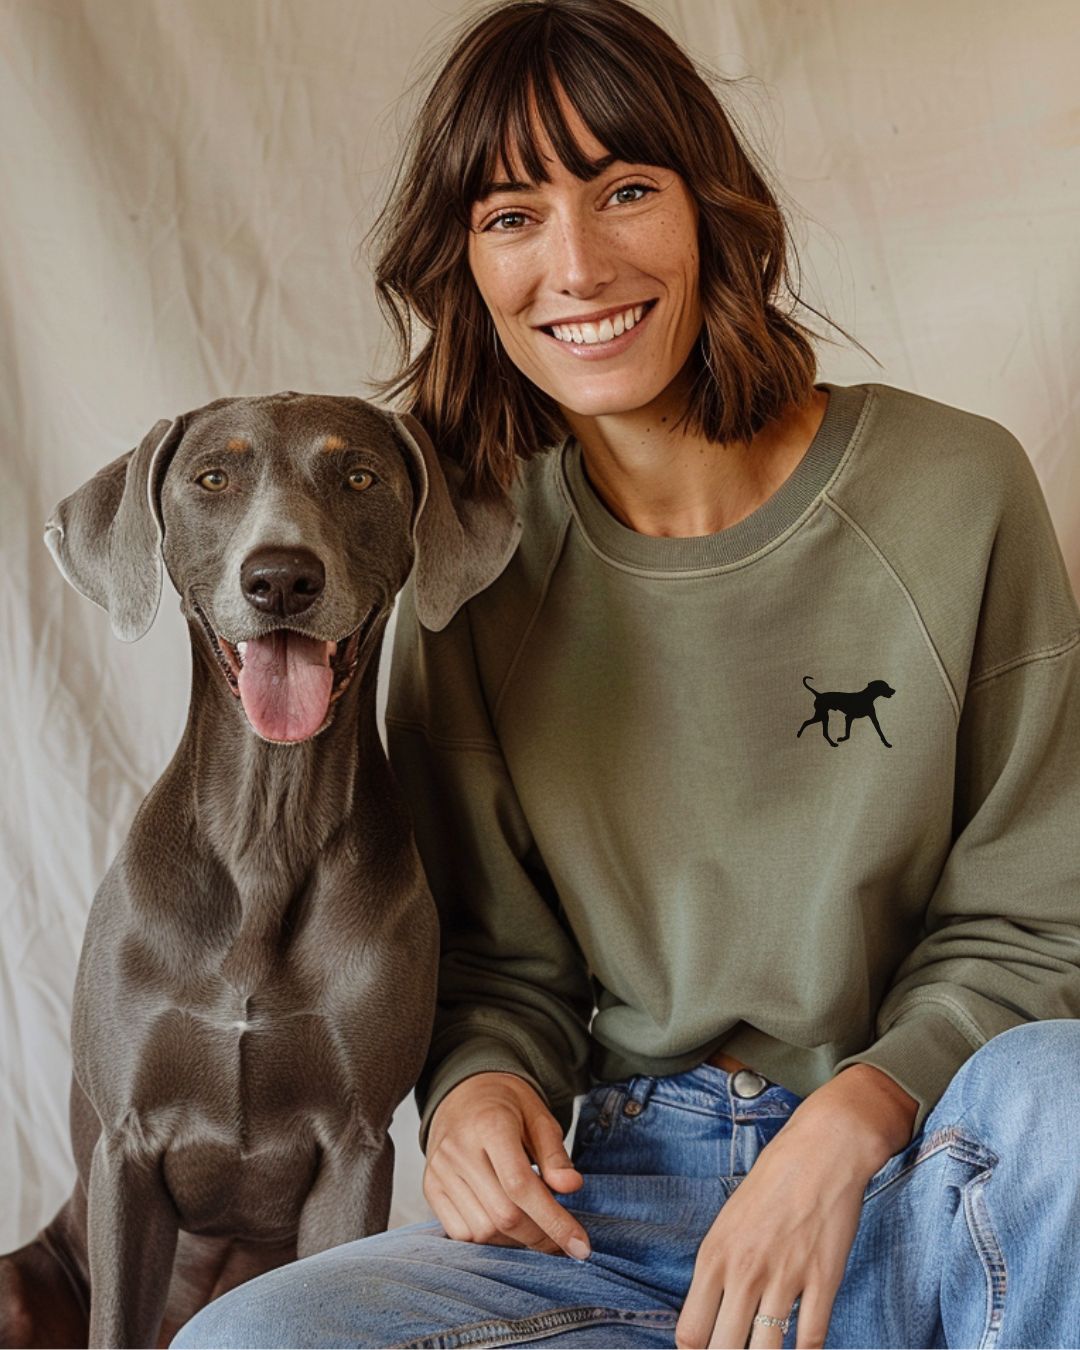 Premium Organic Sweatshirt mit deiner Hunderasse | Forest Green